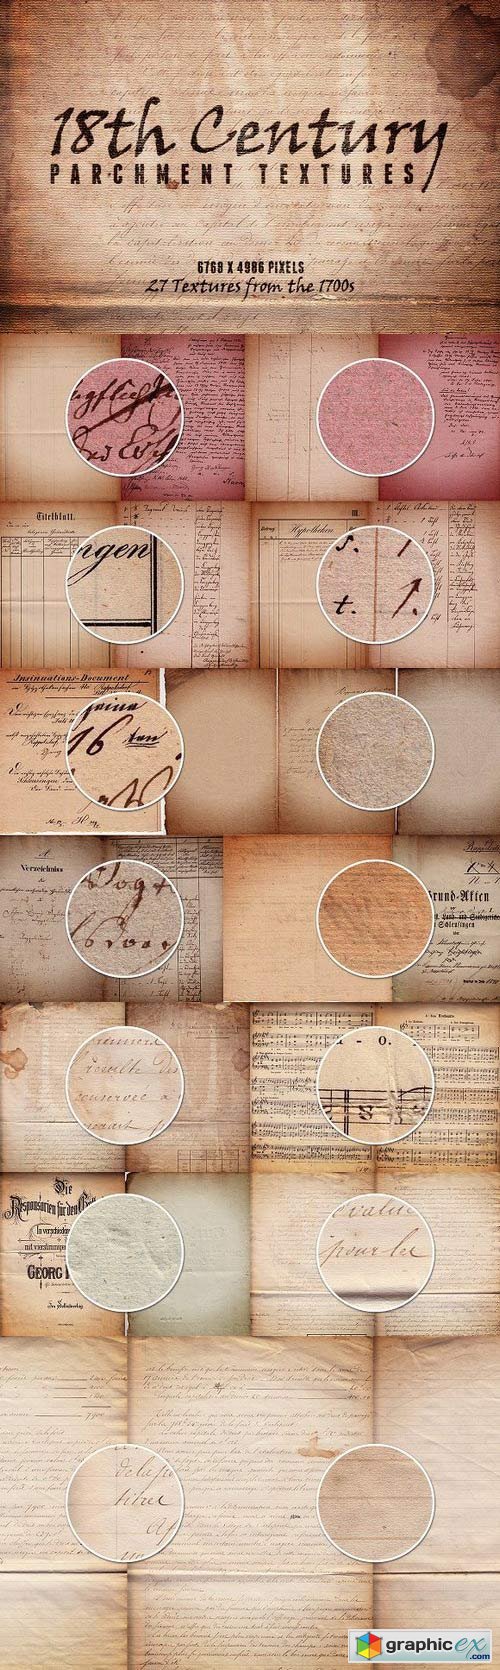 18th Century Parchment Textures